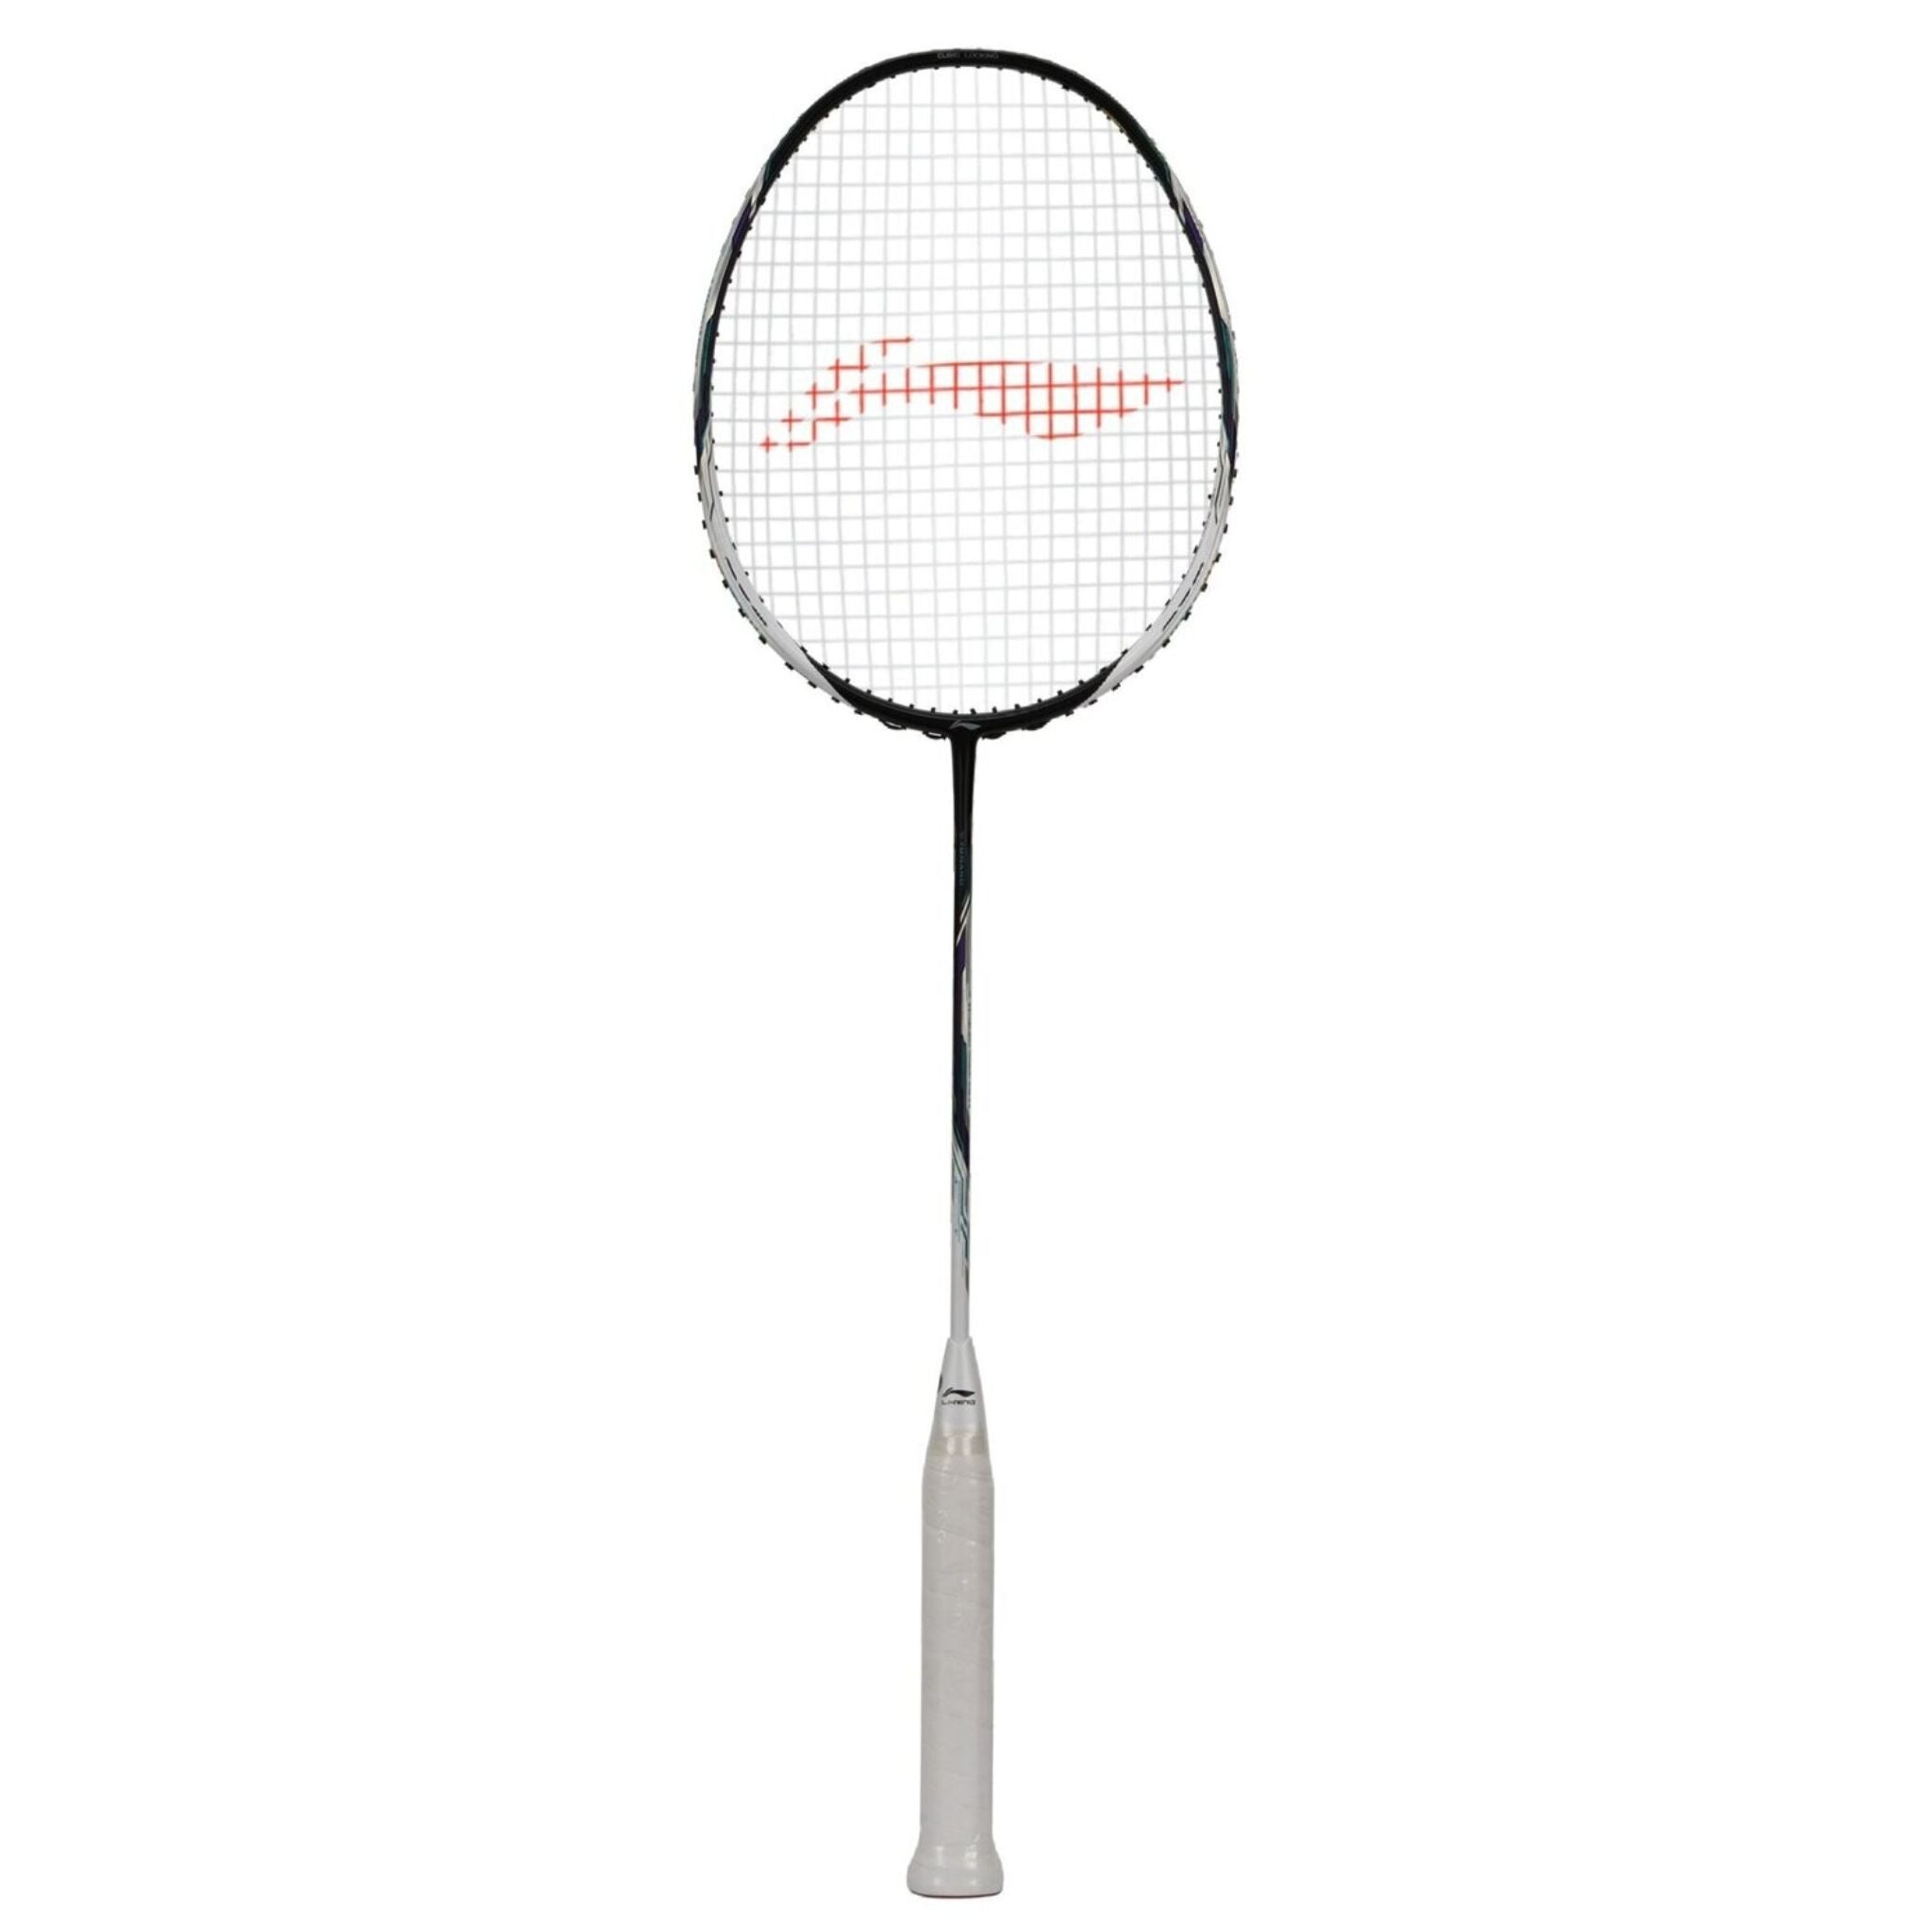 LI-NING TECTONIC 9 3U Badminton Racket